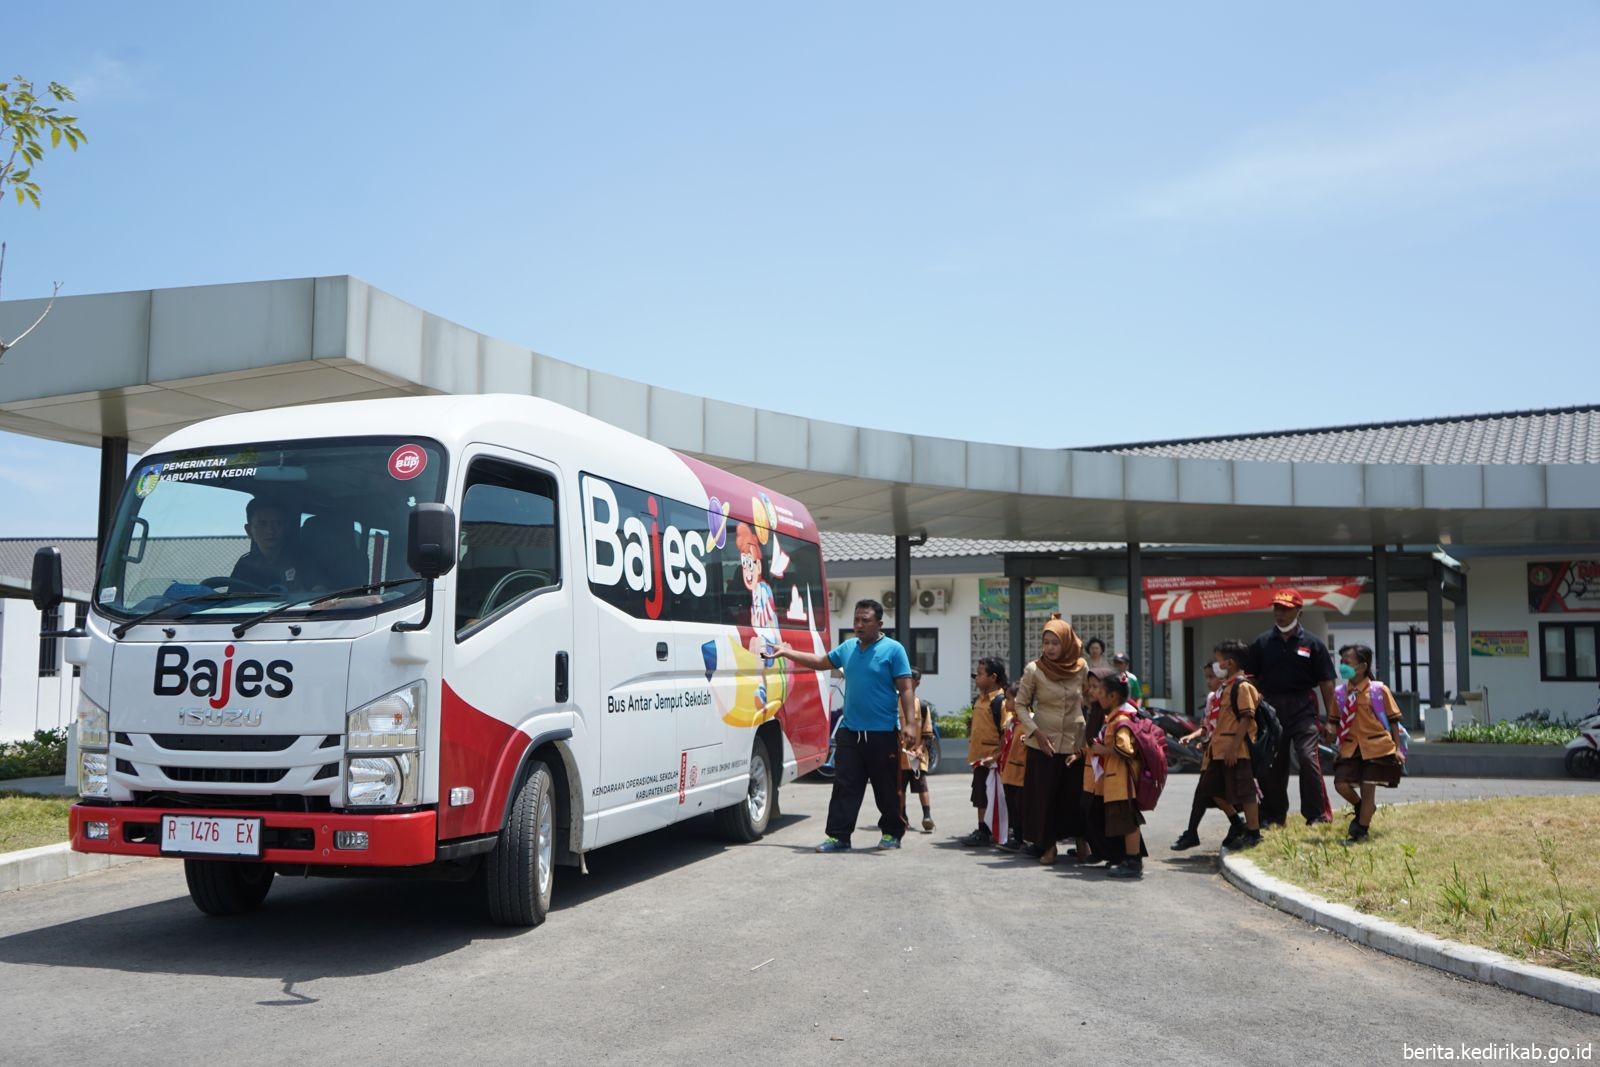 Bajes, Bus Sekolah yang Difasilitasi Mas Dhito Bagi Pelajar Terdampak Bandara